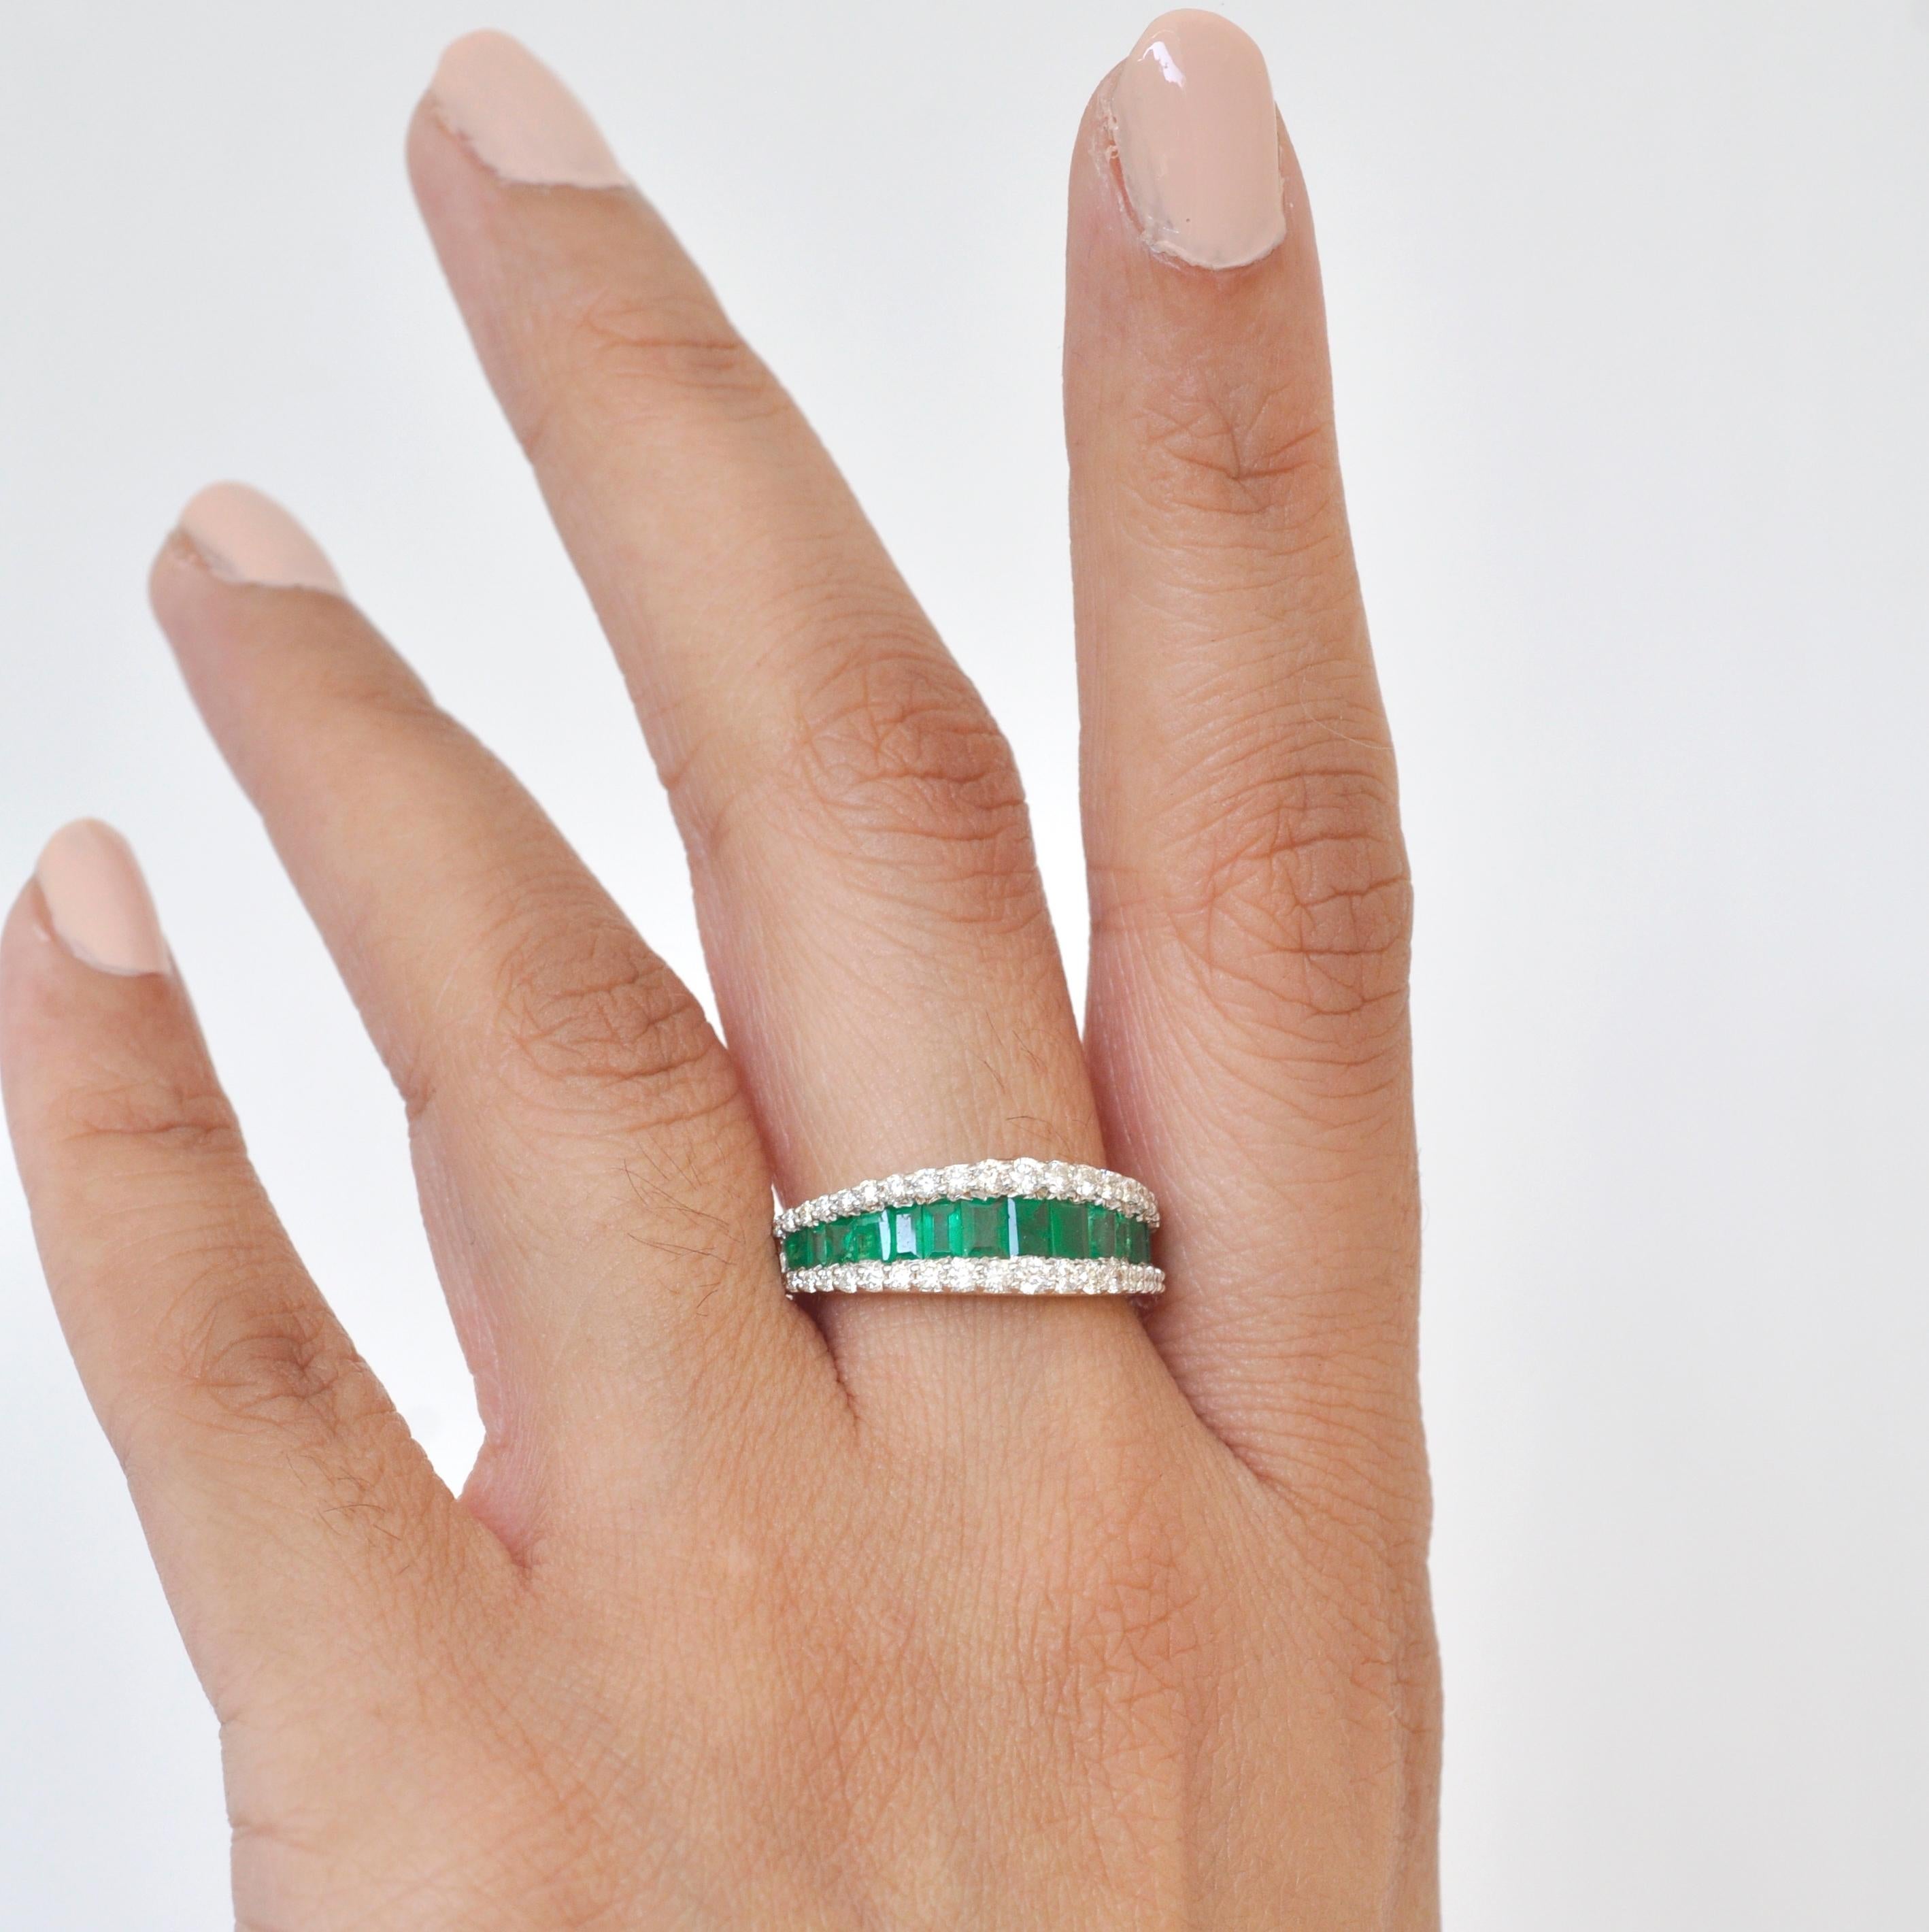 Kunst, Farbe und Kultur inspirieren diesen zeitgenössischen Smaragd-Baguette-Diamantring aus 18 Karat Gold mit kanalgefassten Smaragd-Baguetten, die sich zu einem marquiseförmigen Ring verjüngen. Das prächtige Scharlachrot der 1,05 Karat Smaragde